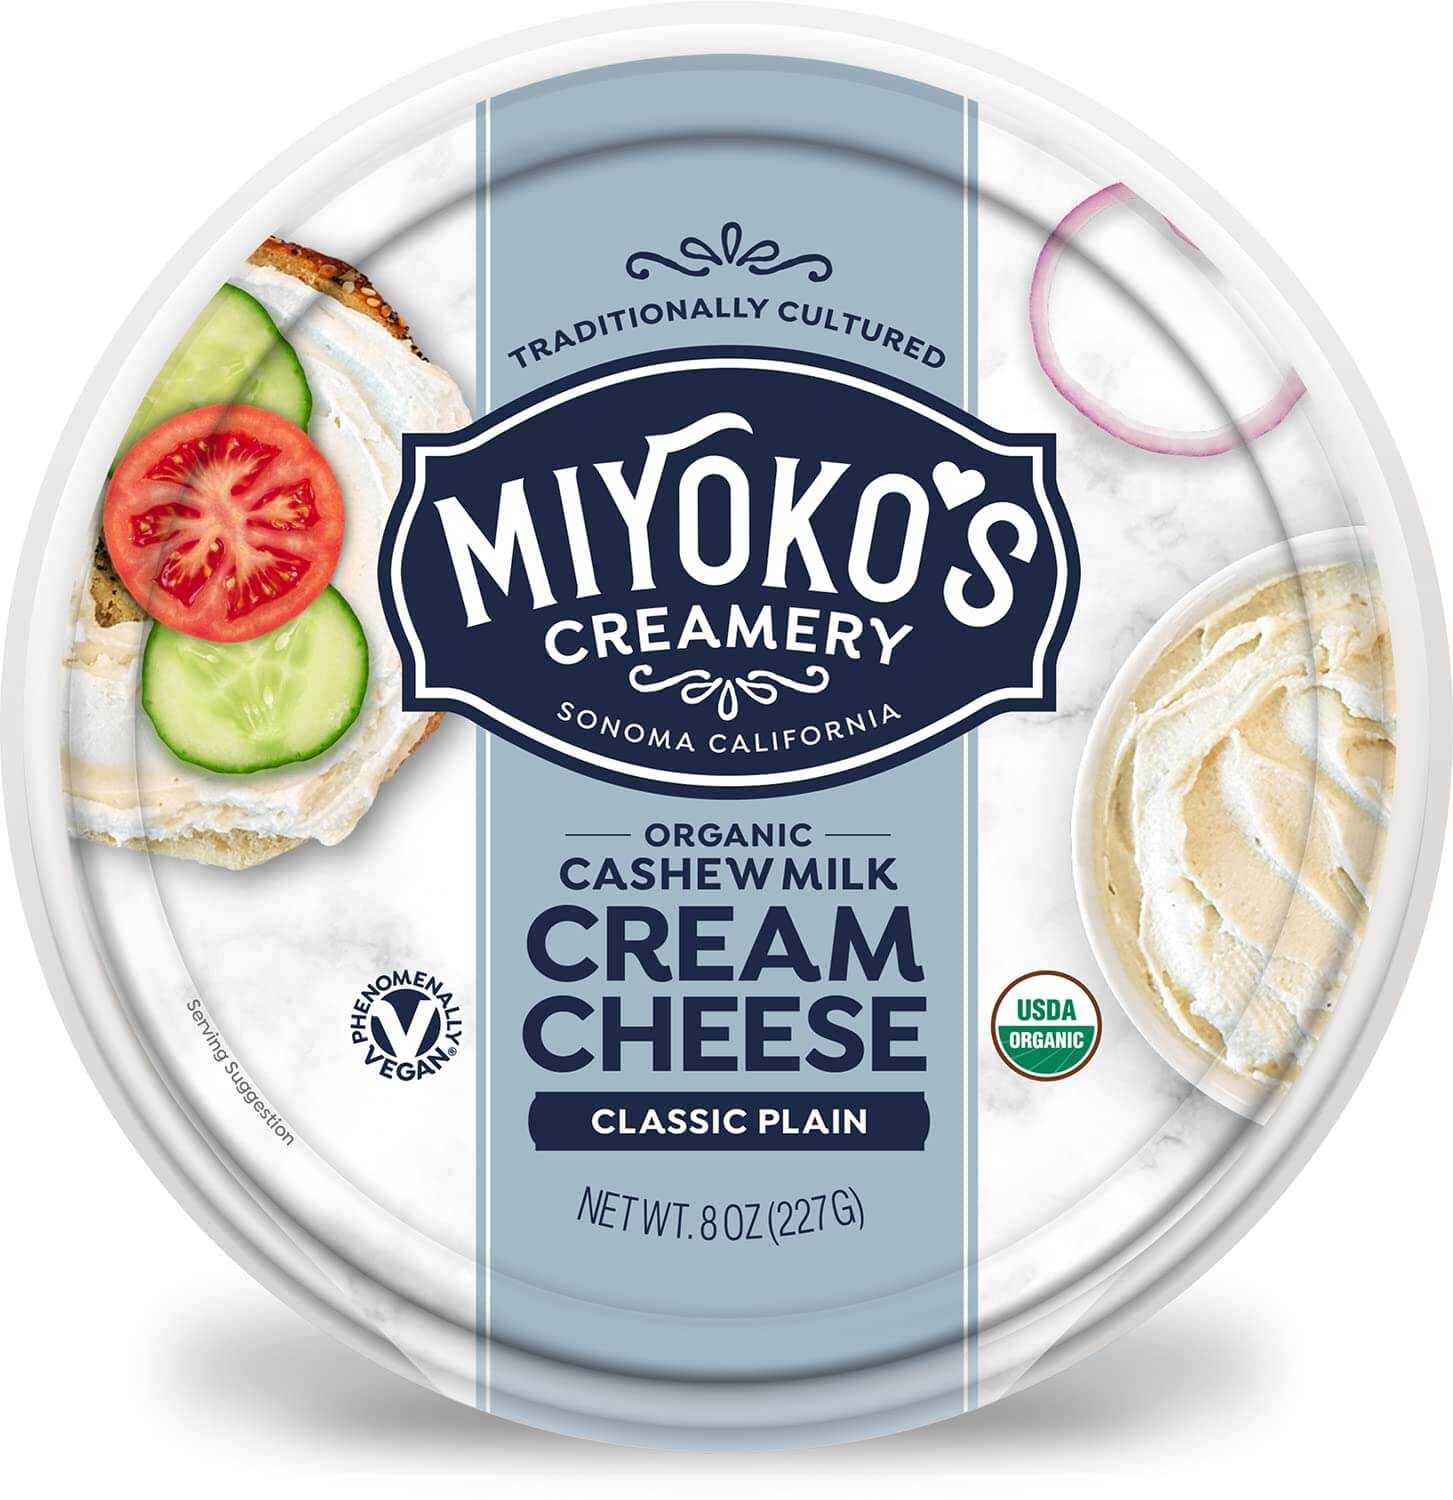 Miyoko's Creamery Cashew Milk Cream Cheese